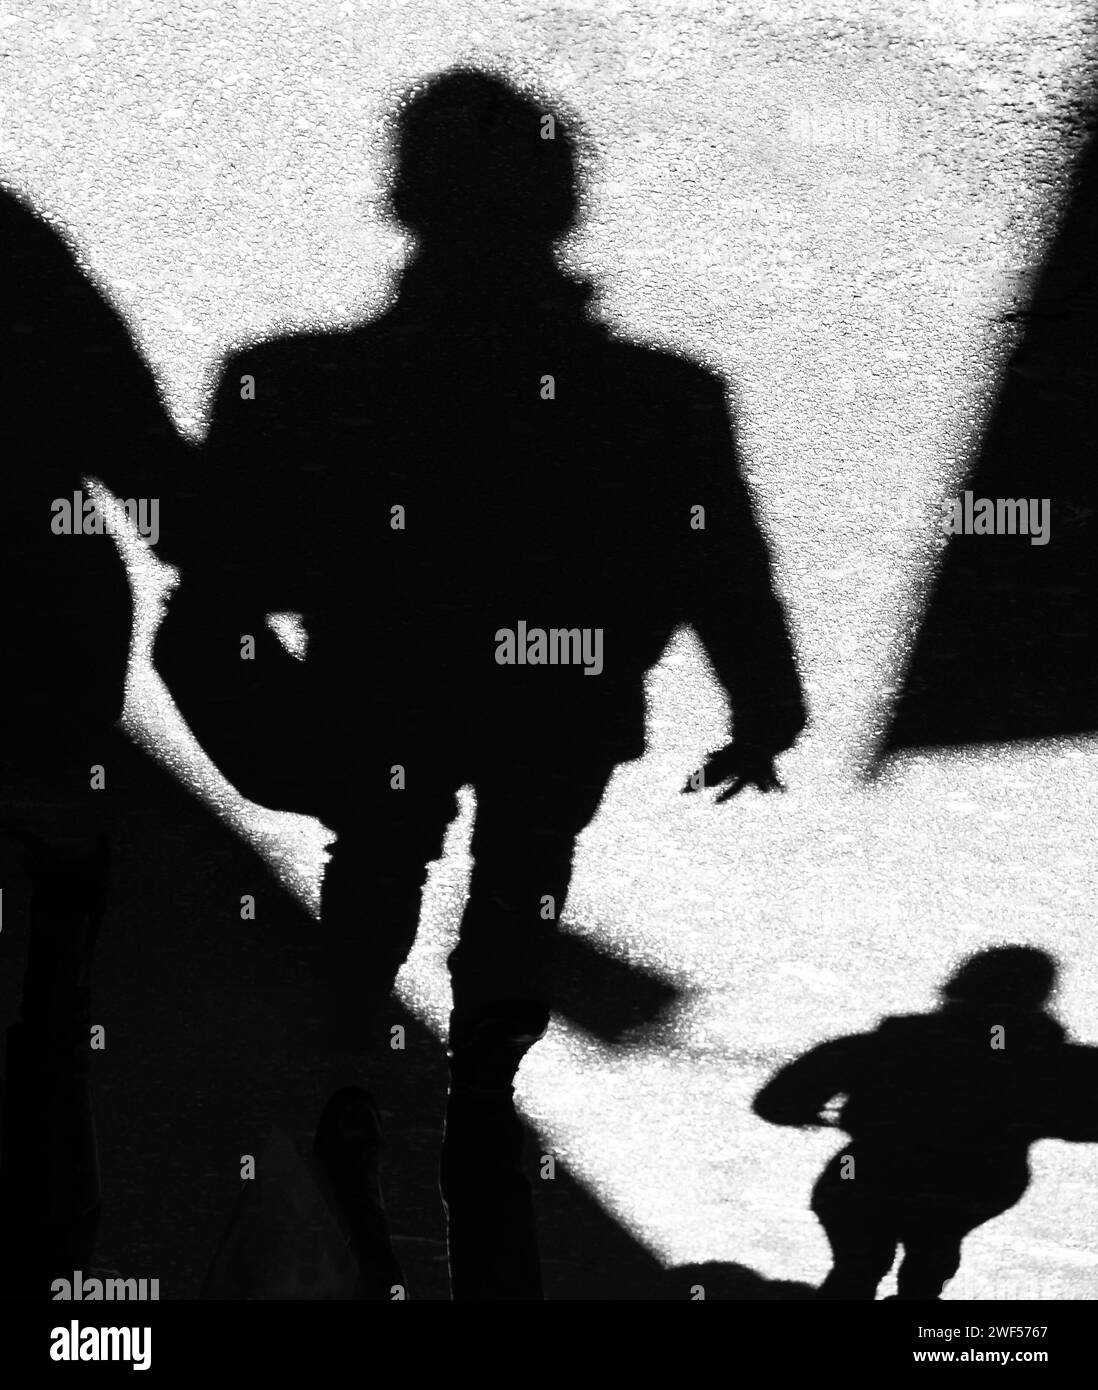 Schatten-Silhouette von nicht erkennbaren Menschen, die auf der Stadtstraße laufen, in Schwarz-weiß Stockfoto